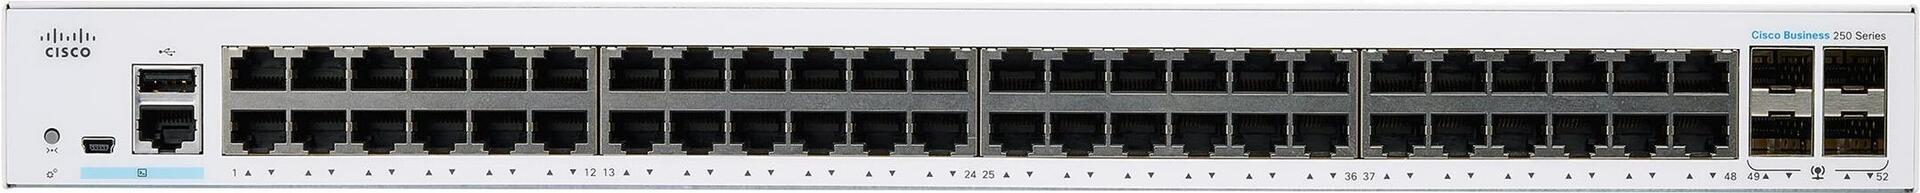 Cisco Business 250 Series CBS250-48T-4G (CBS250-48T-4G-EU)